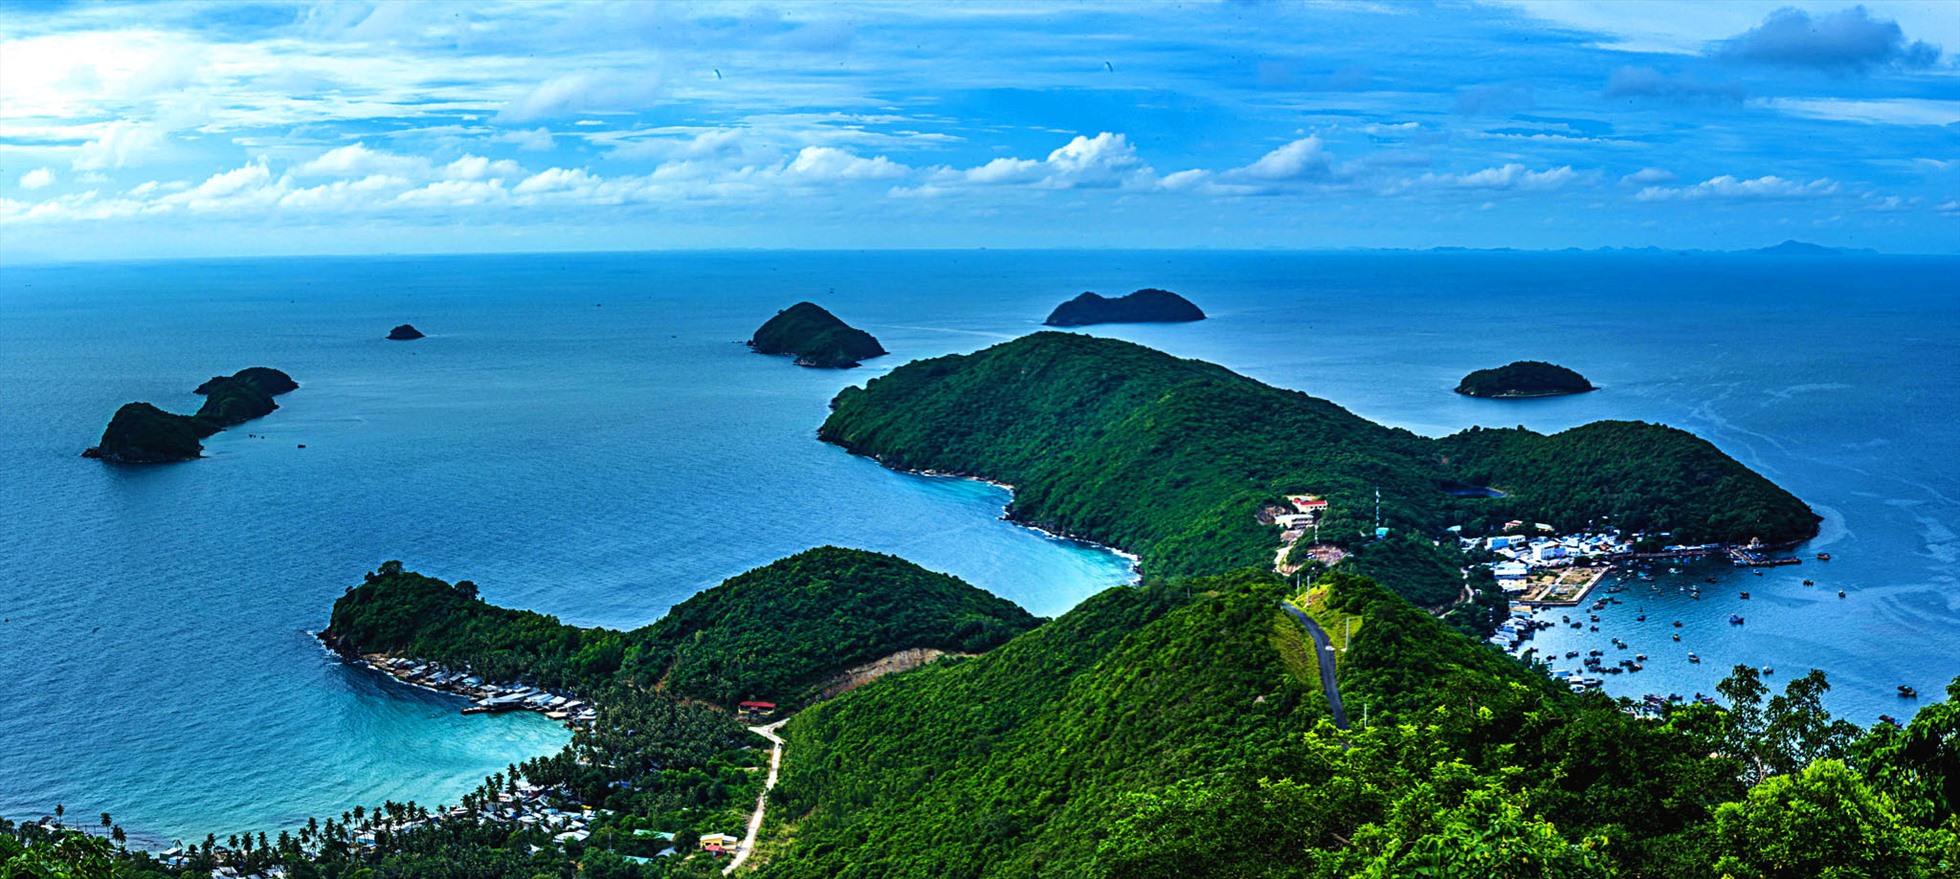 Quần đảo Nam Du của Kiên Giang la liệt các đảo to nhỏ, hòn đảo lớn nhất, sao đảo này mang tên Củ Tron? - Ảnh 1.